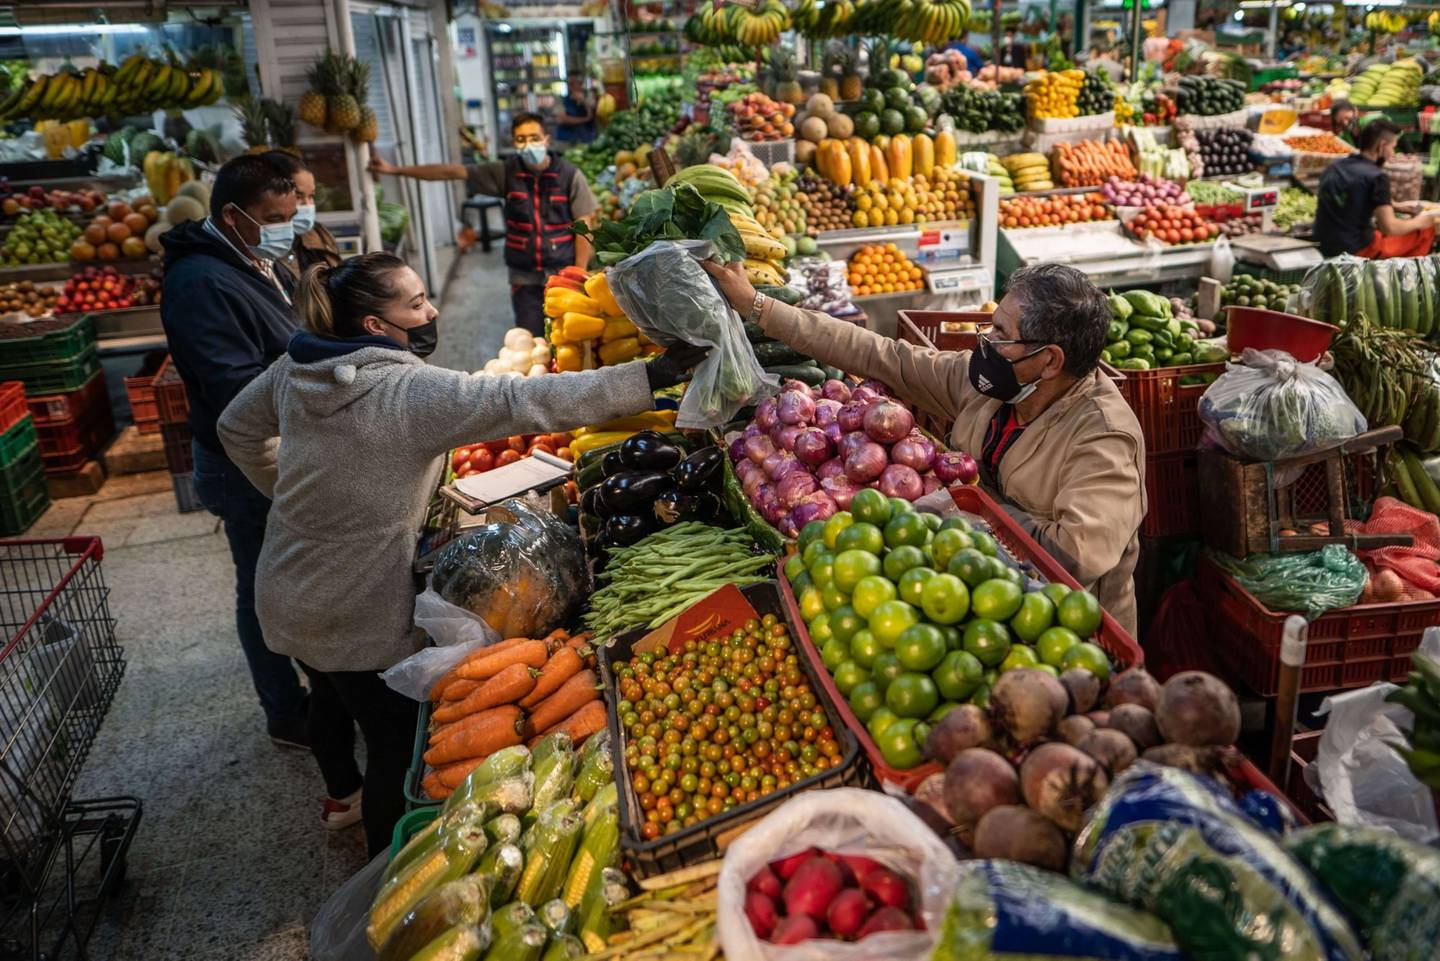 El costo de vida en los países de América Latina continúa al alza a medida que los precios de los alimentos no paran de subir. (Foto: Nathalia Angarita/Bloomberg)dfd